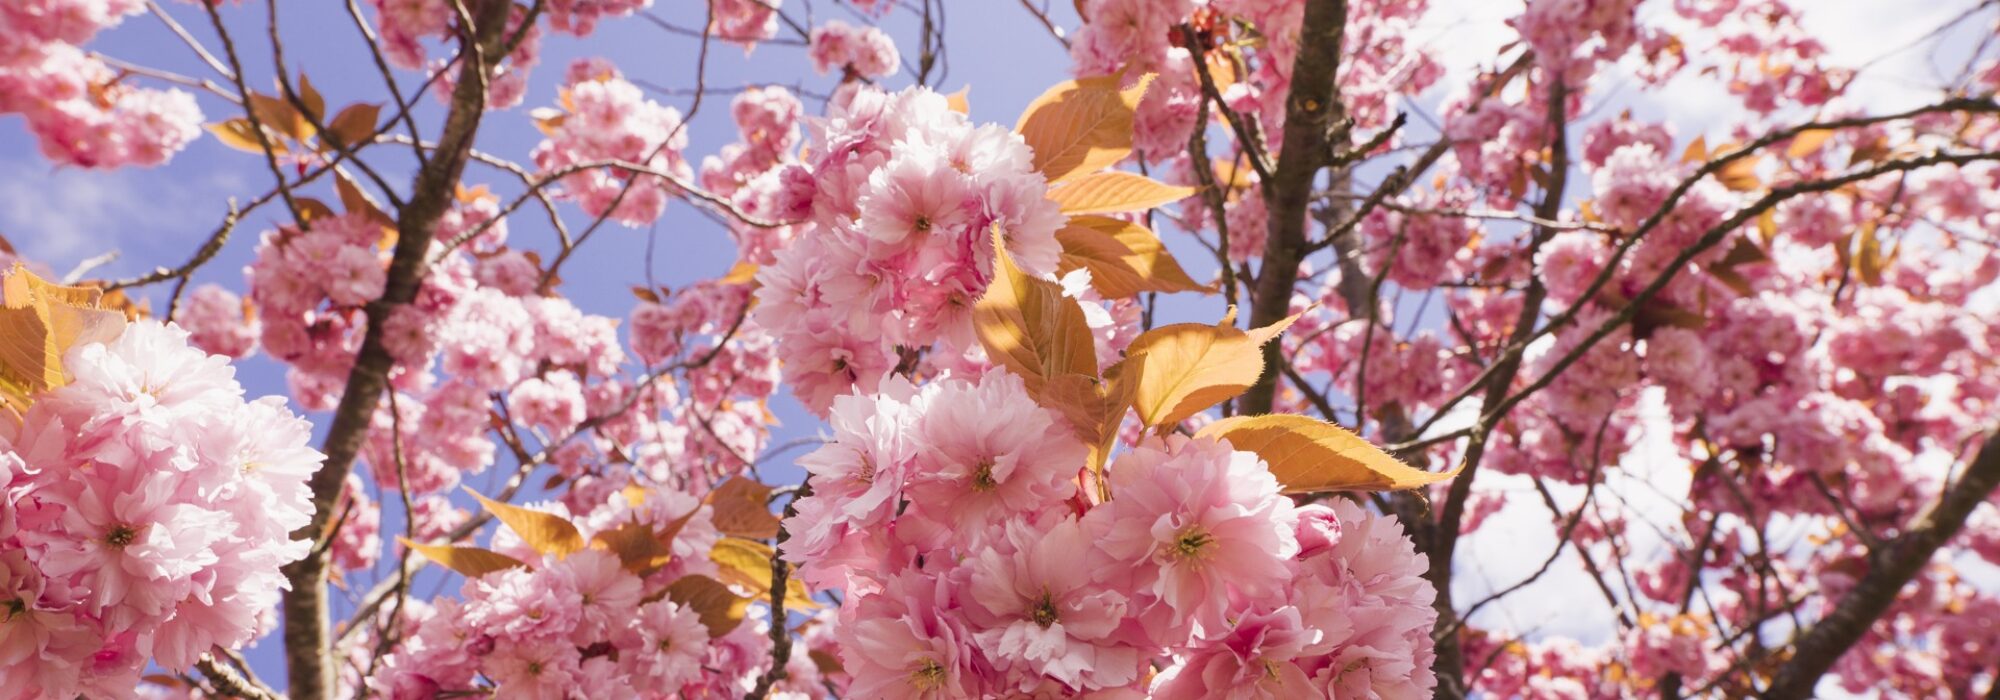 Körsbärsträd i full blom